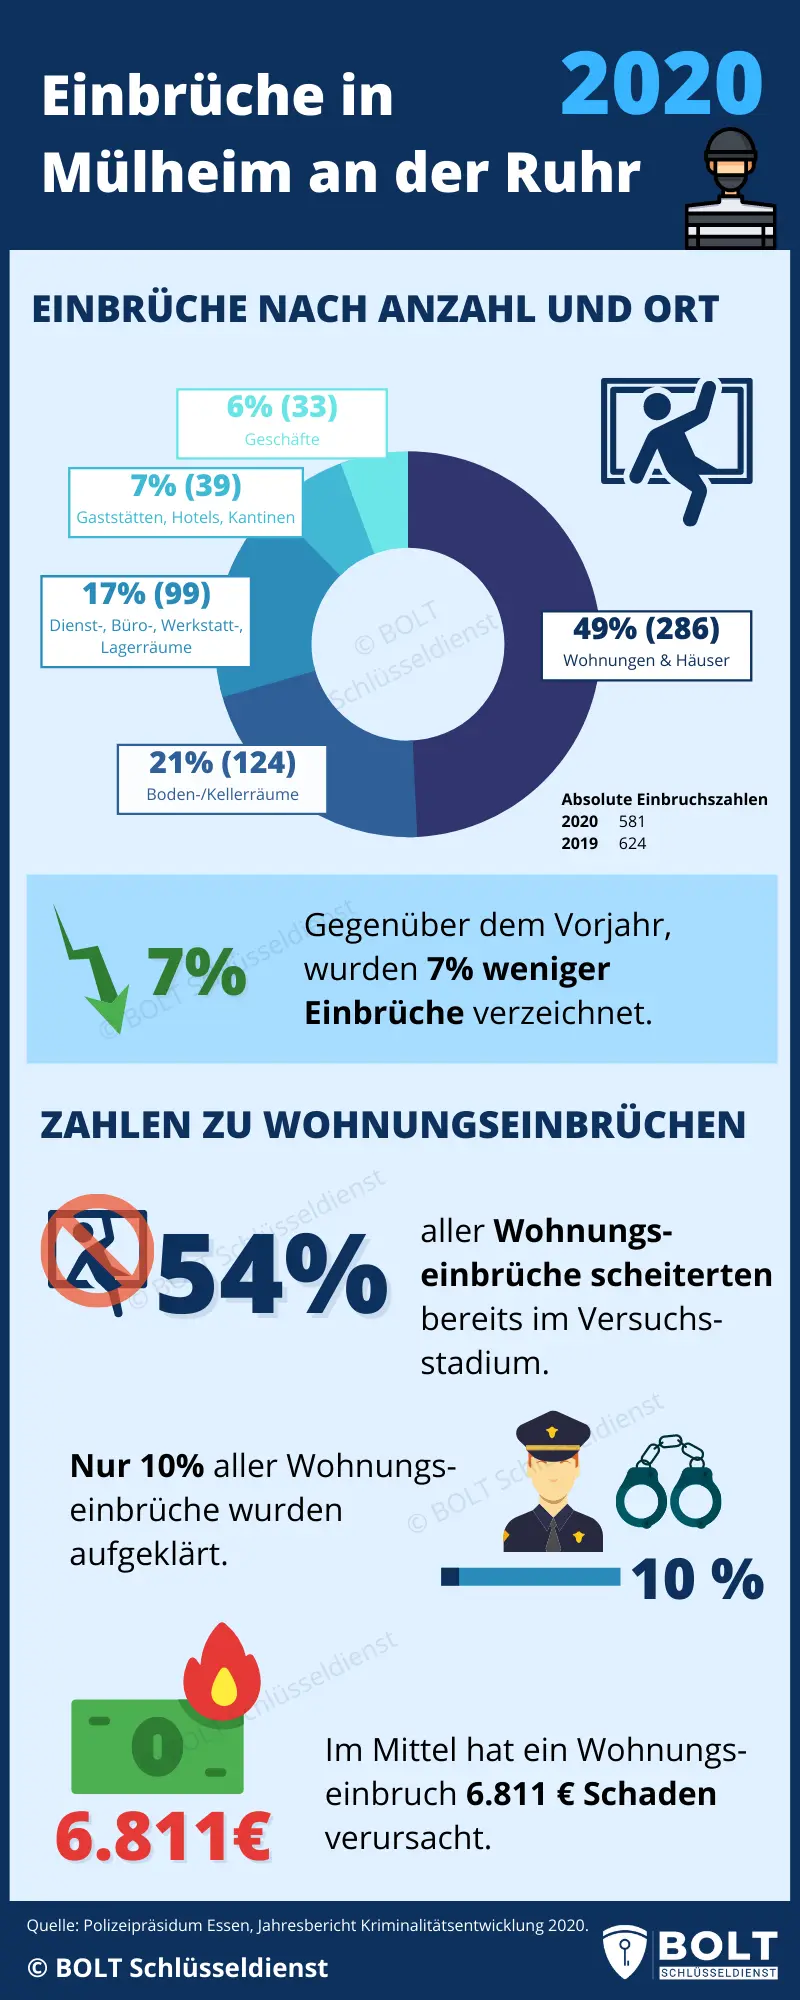 Infografik zu Einbruchsstatistik zur Stadt Mülheim an der Ruhr in 2020